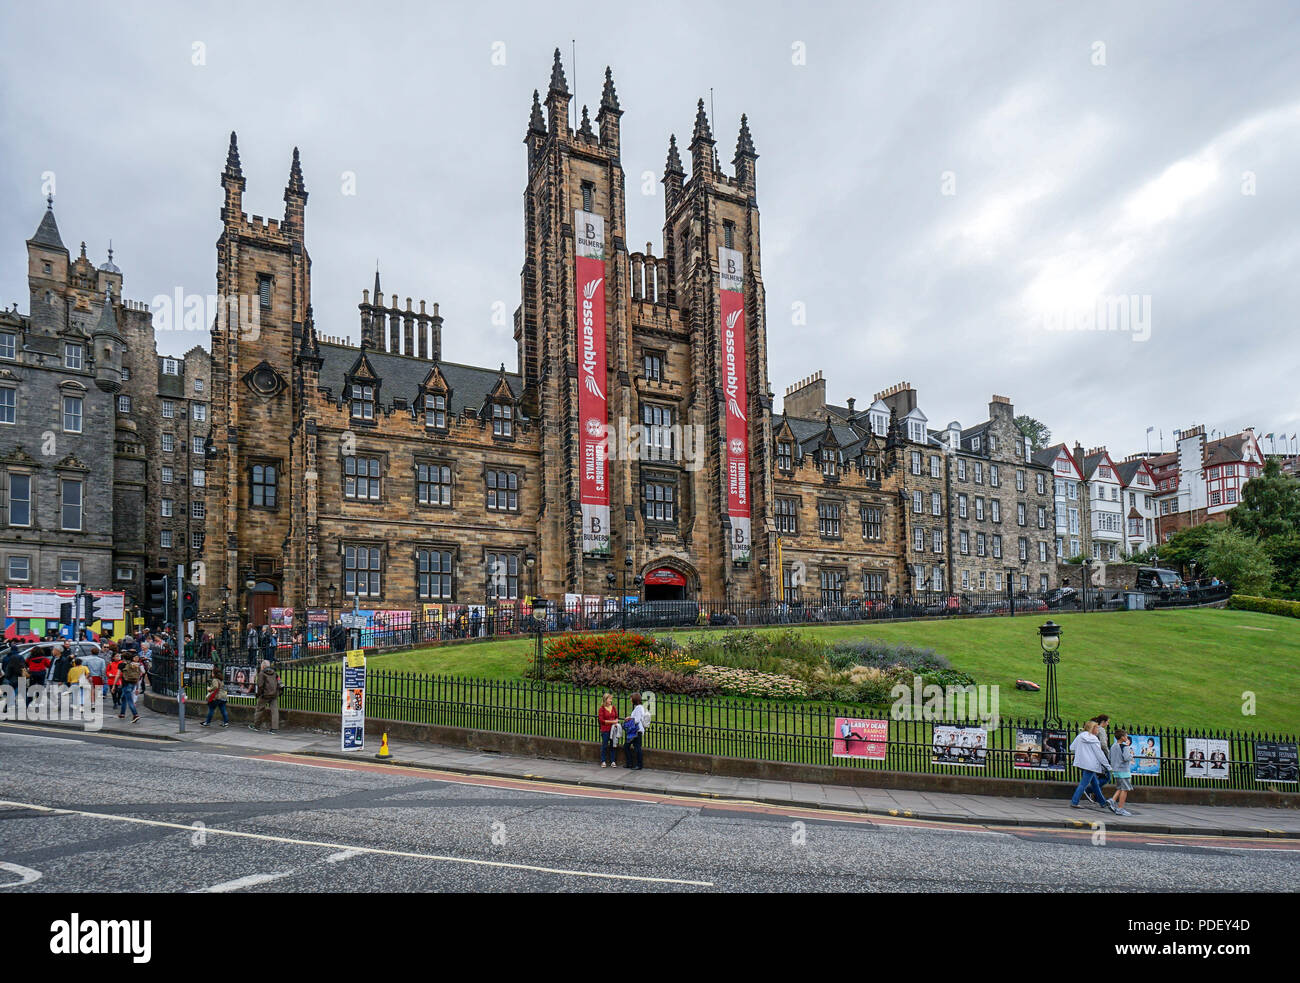 Die Aula währenddes Edinburgh Festival Fringe 2018 Damm Ort Edinburgh Schottland Großbritannien Stockfoto